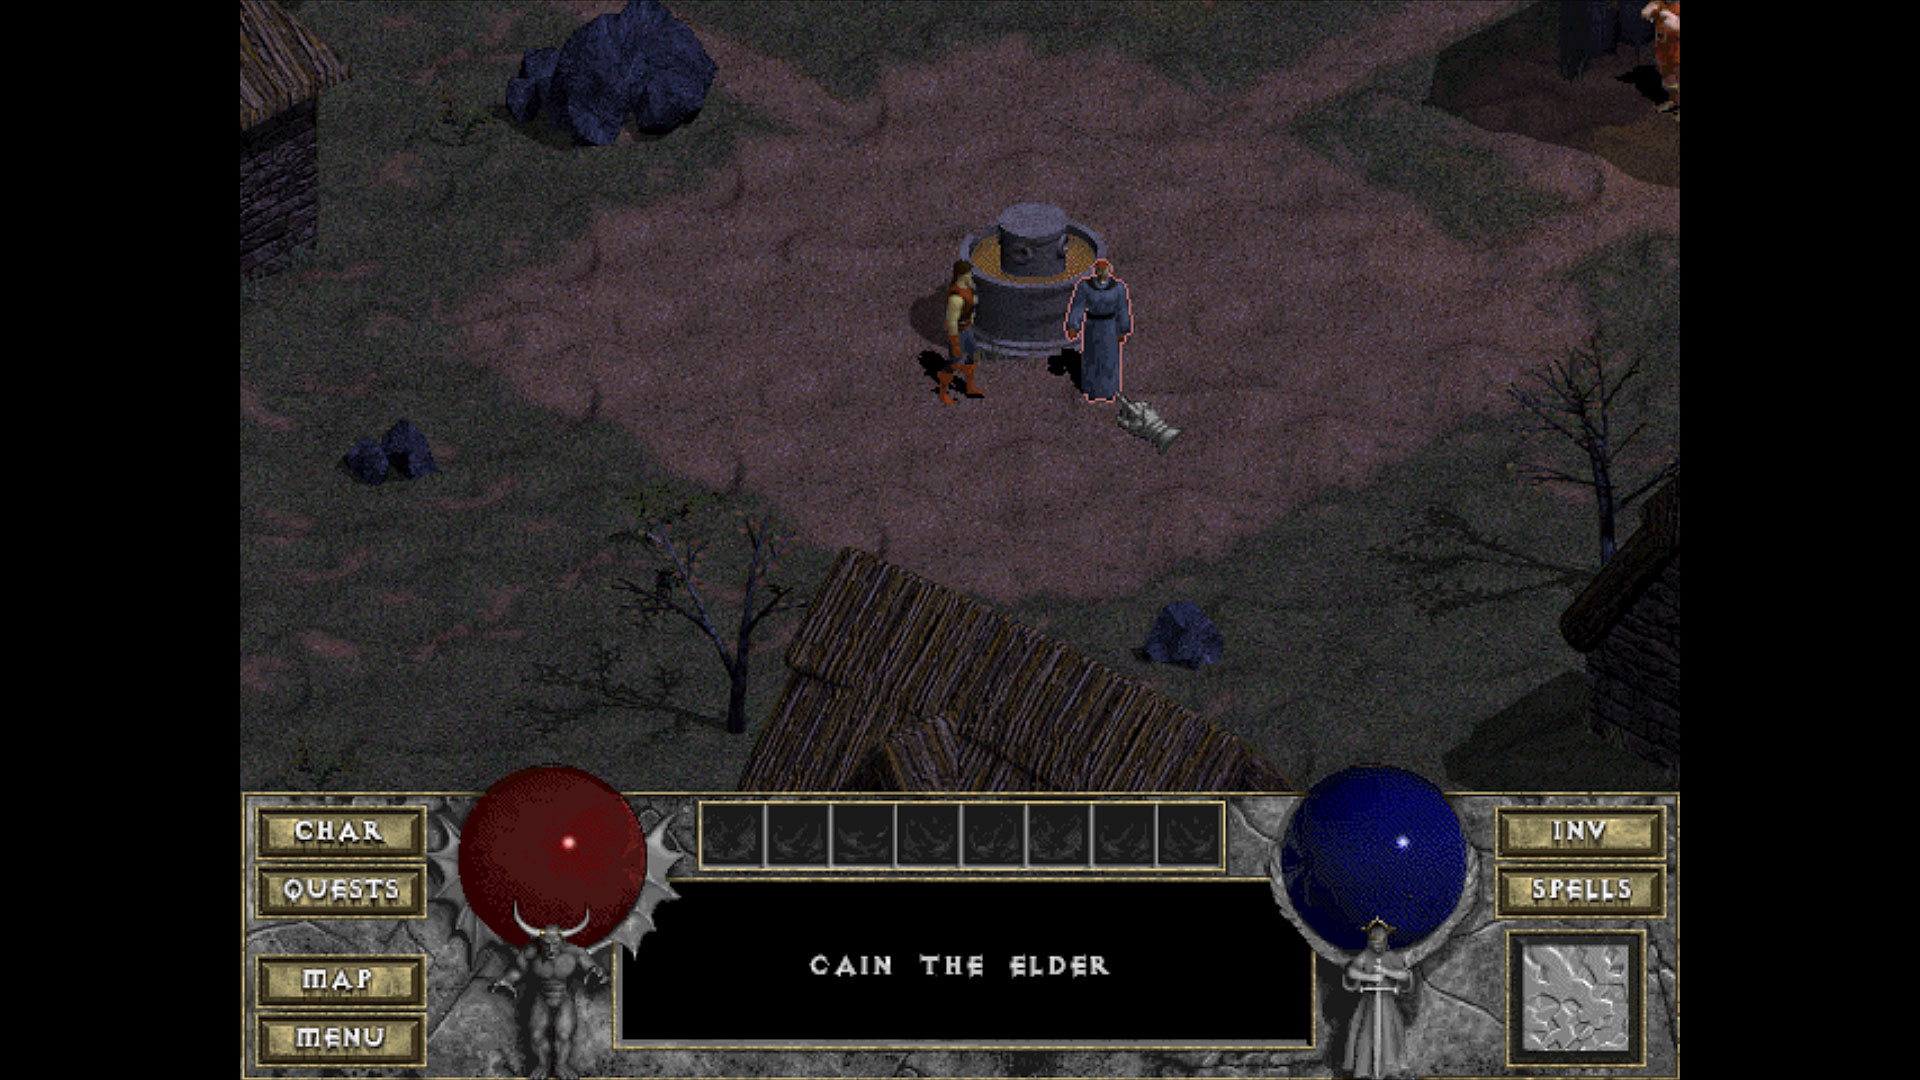 Screenshot du jeu diablo, le personnage se trouve dans le village près de la fontaine, la musique associée est jouable via le lecteur sous l'image